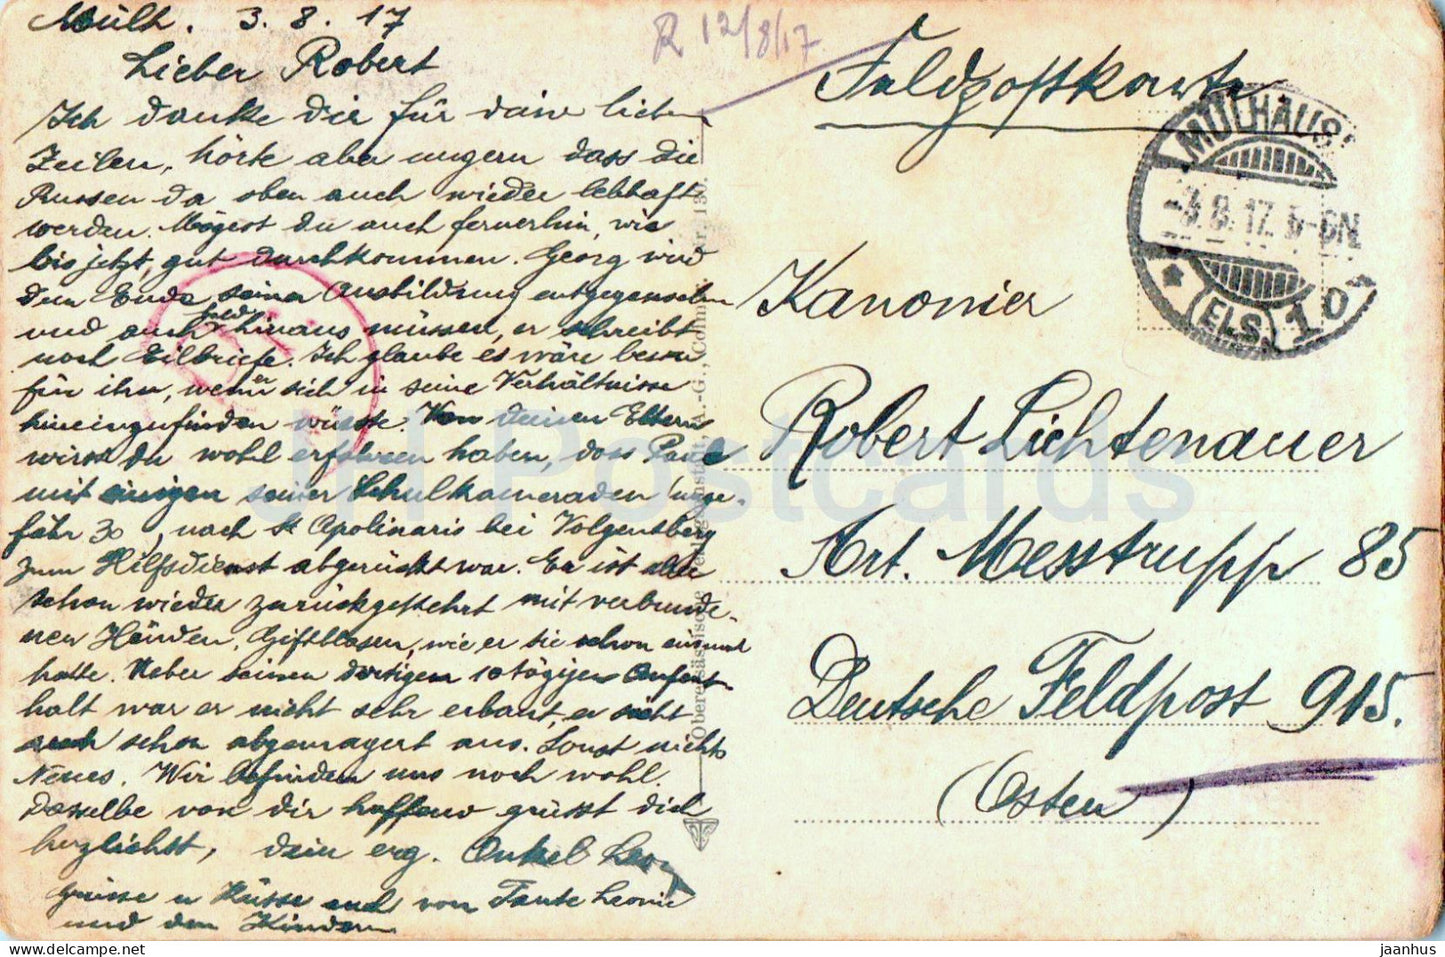 Schnierlach mit Buchenkopf - Feldpost - Militärpost - alte Postkarte - 1917 - Frankreich - gebraucht 